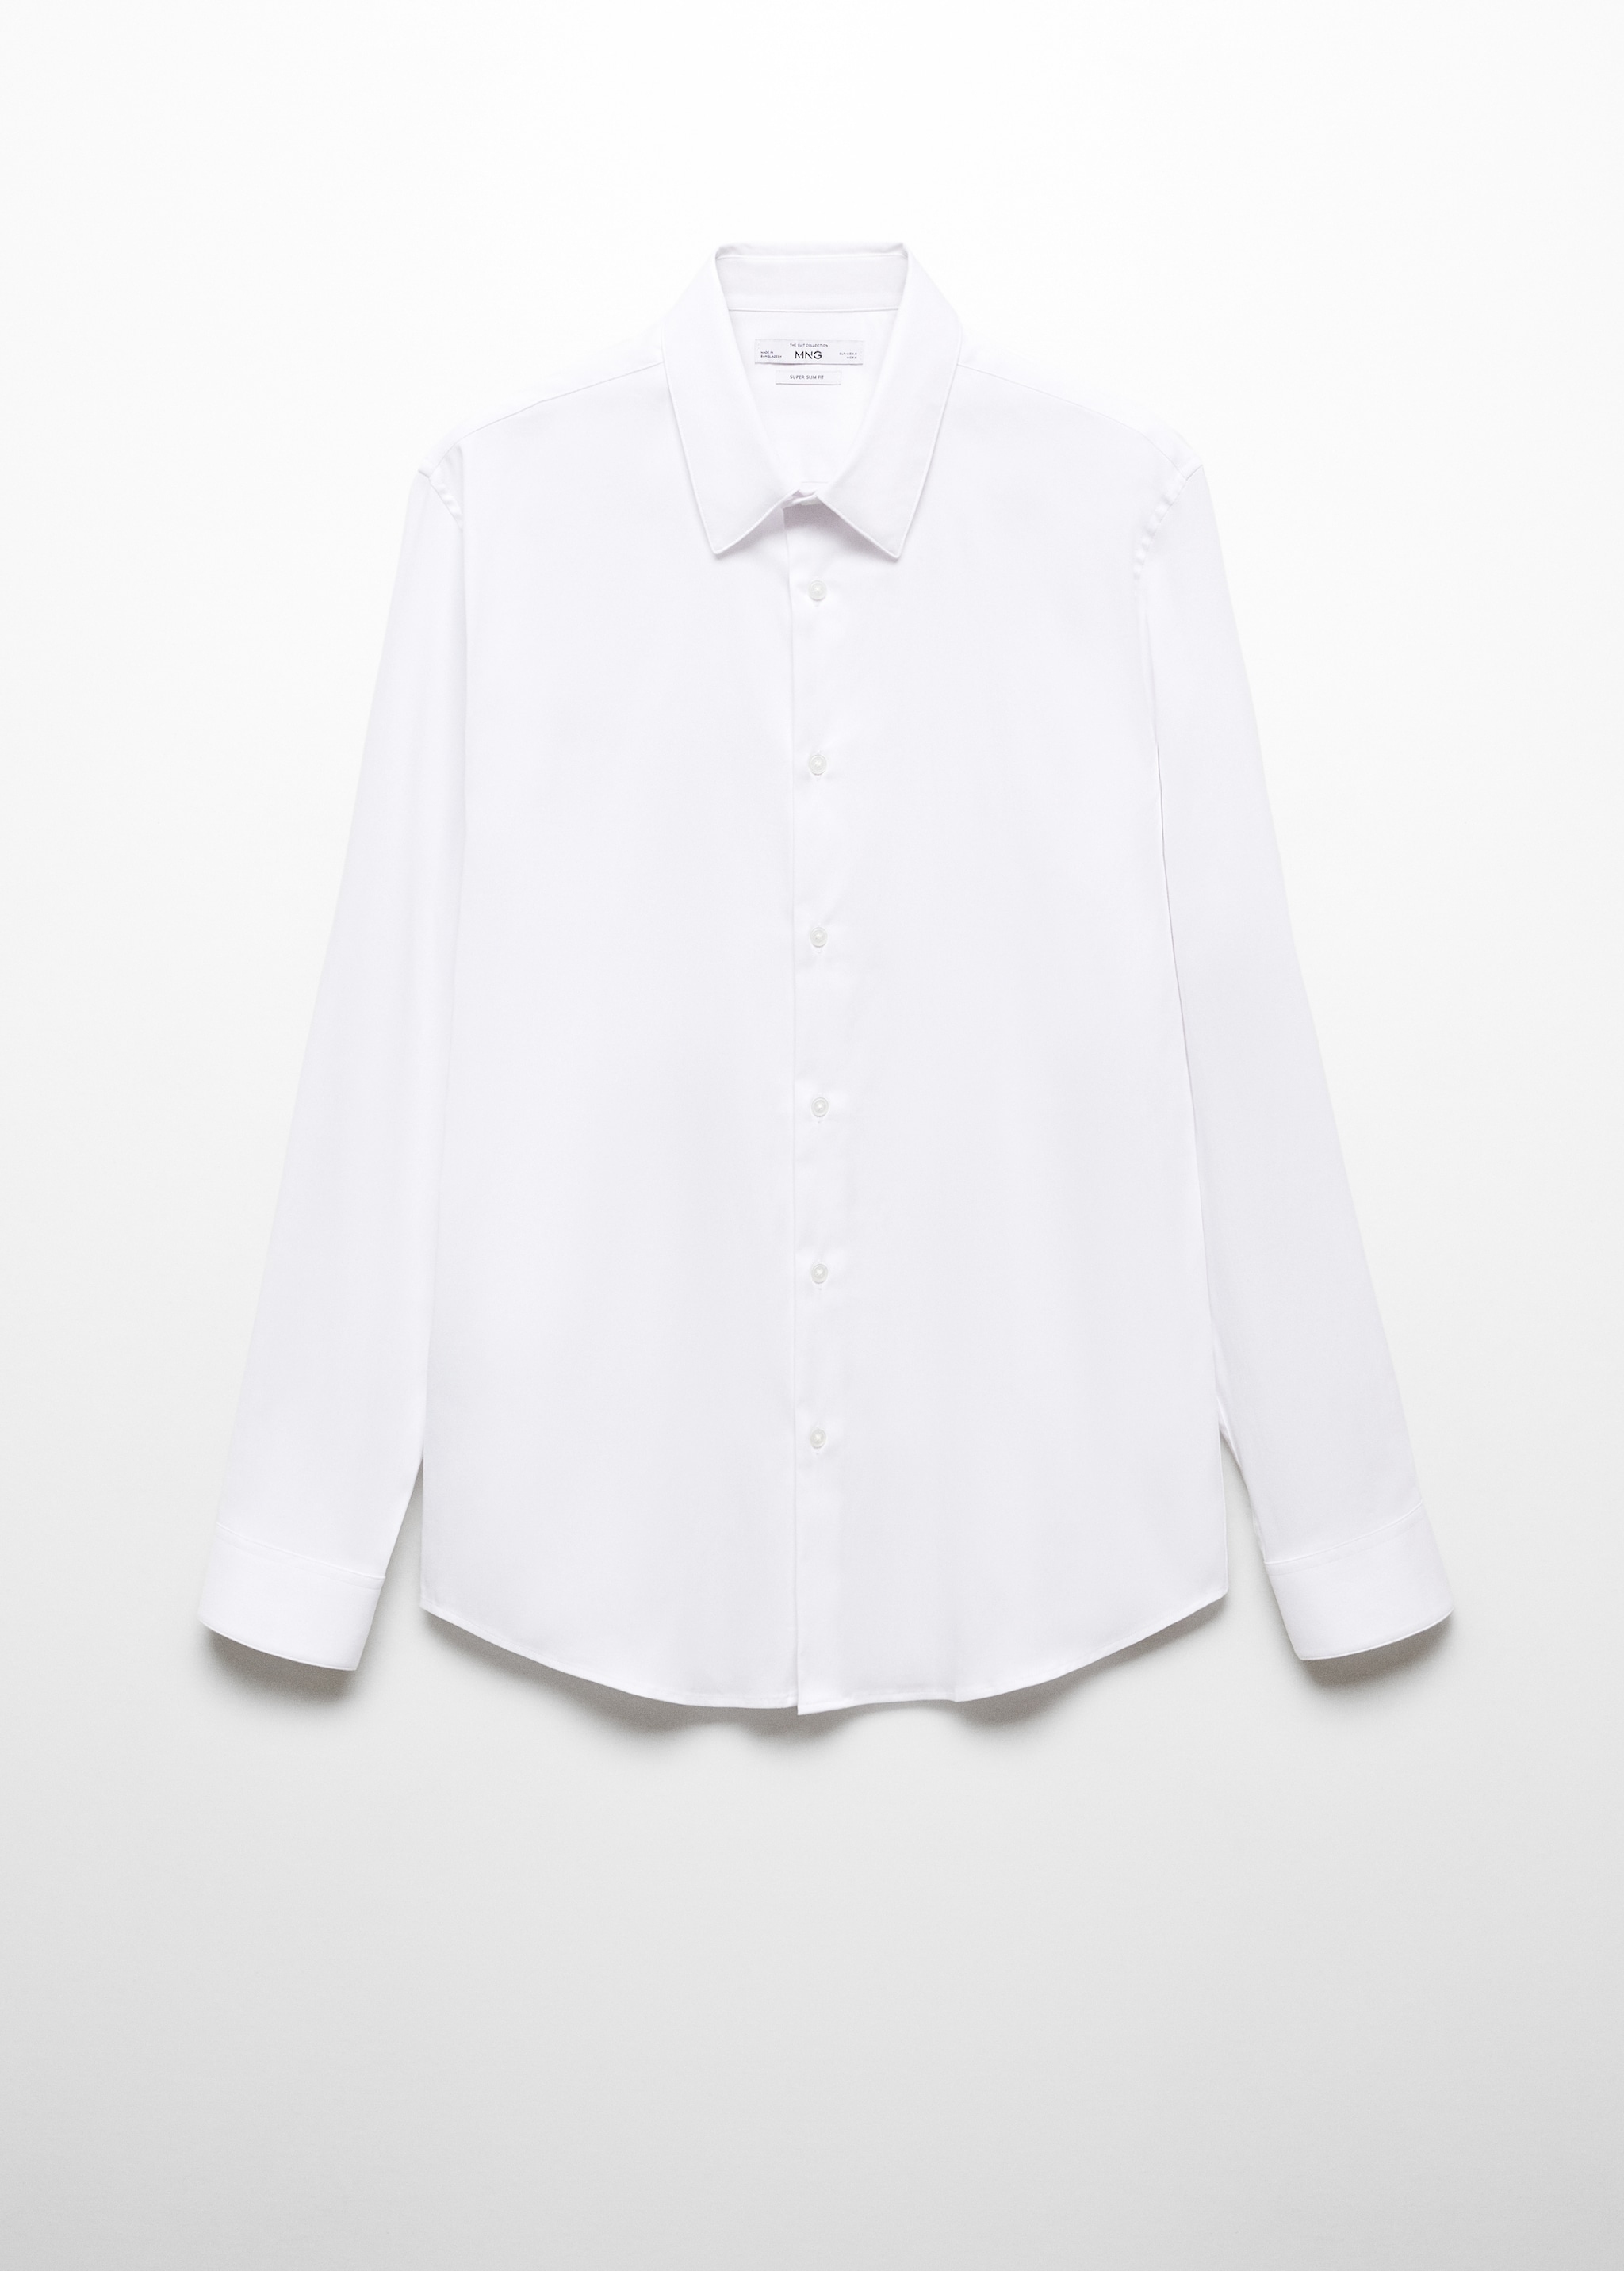 قميص بدلة من قماش البوبلين سوبر سليم فيت - منتج دون نموذج